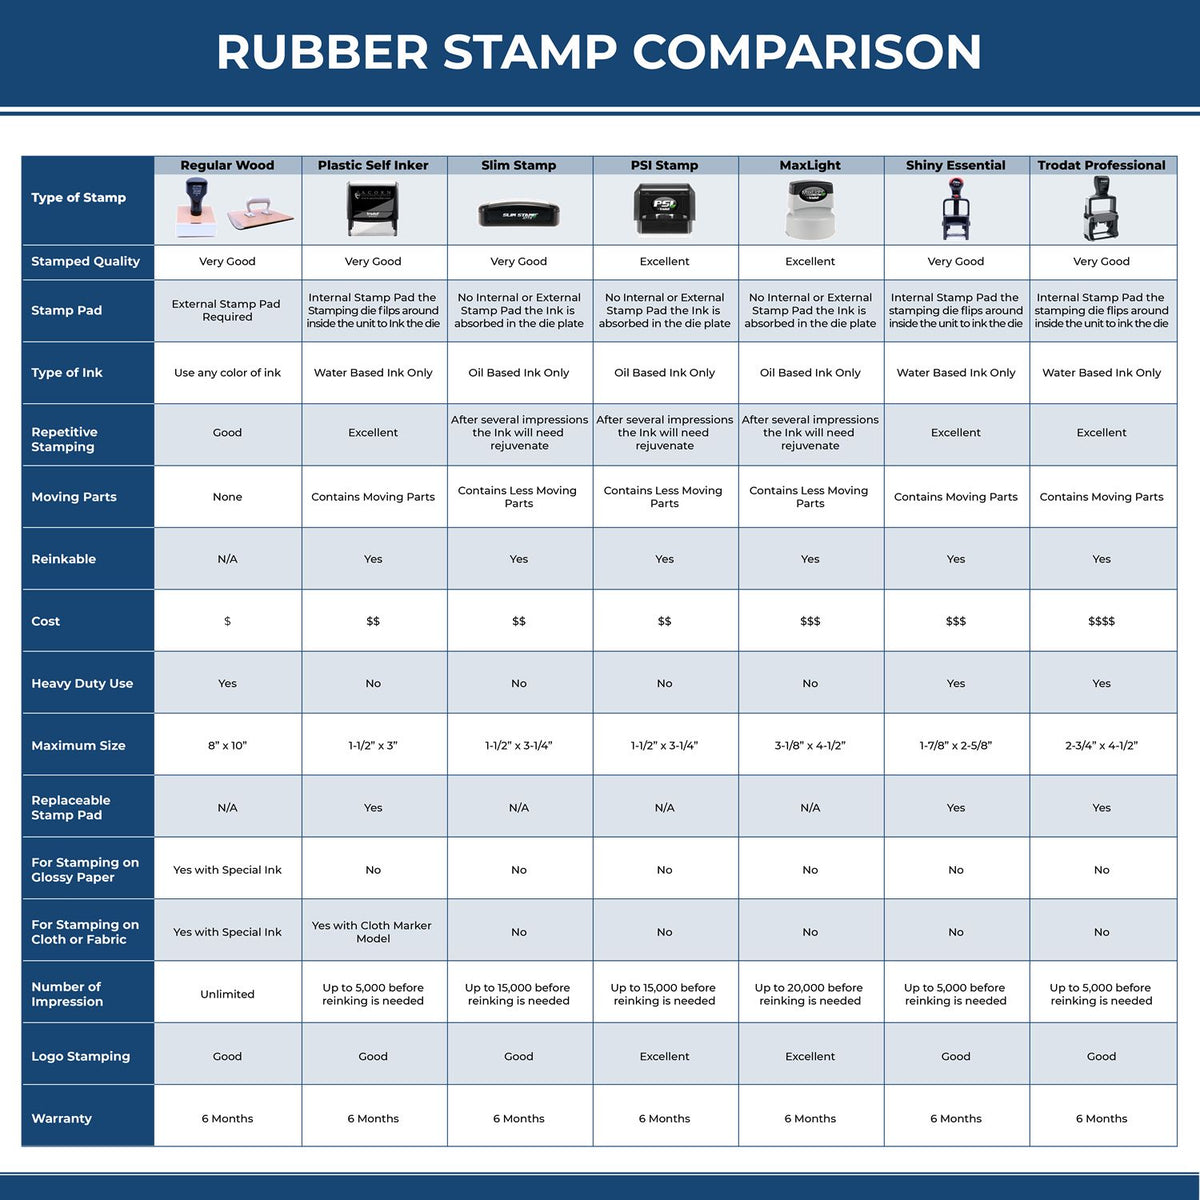 Large Script Rewrite in Cursive Rubber Stamp 5622R Rubber Stamp Comparison